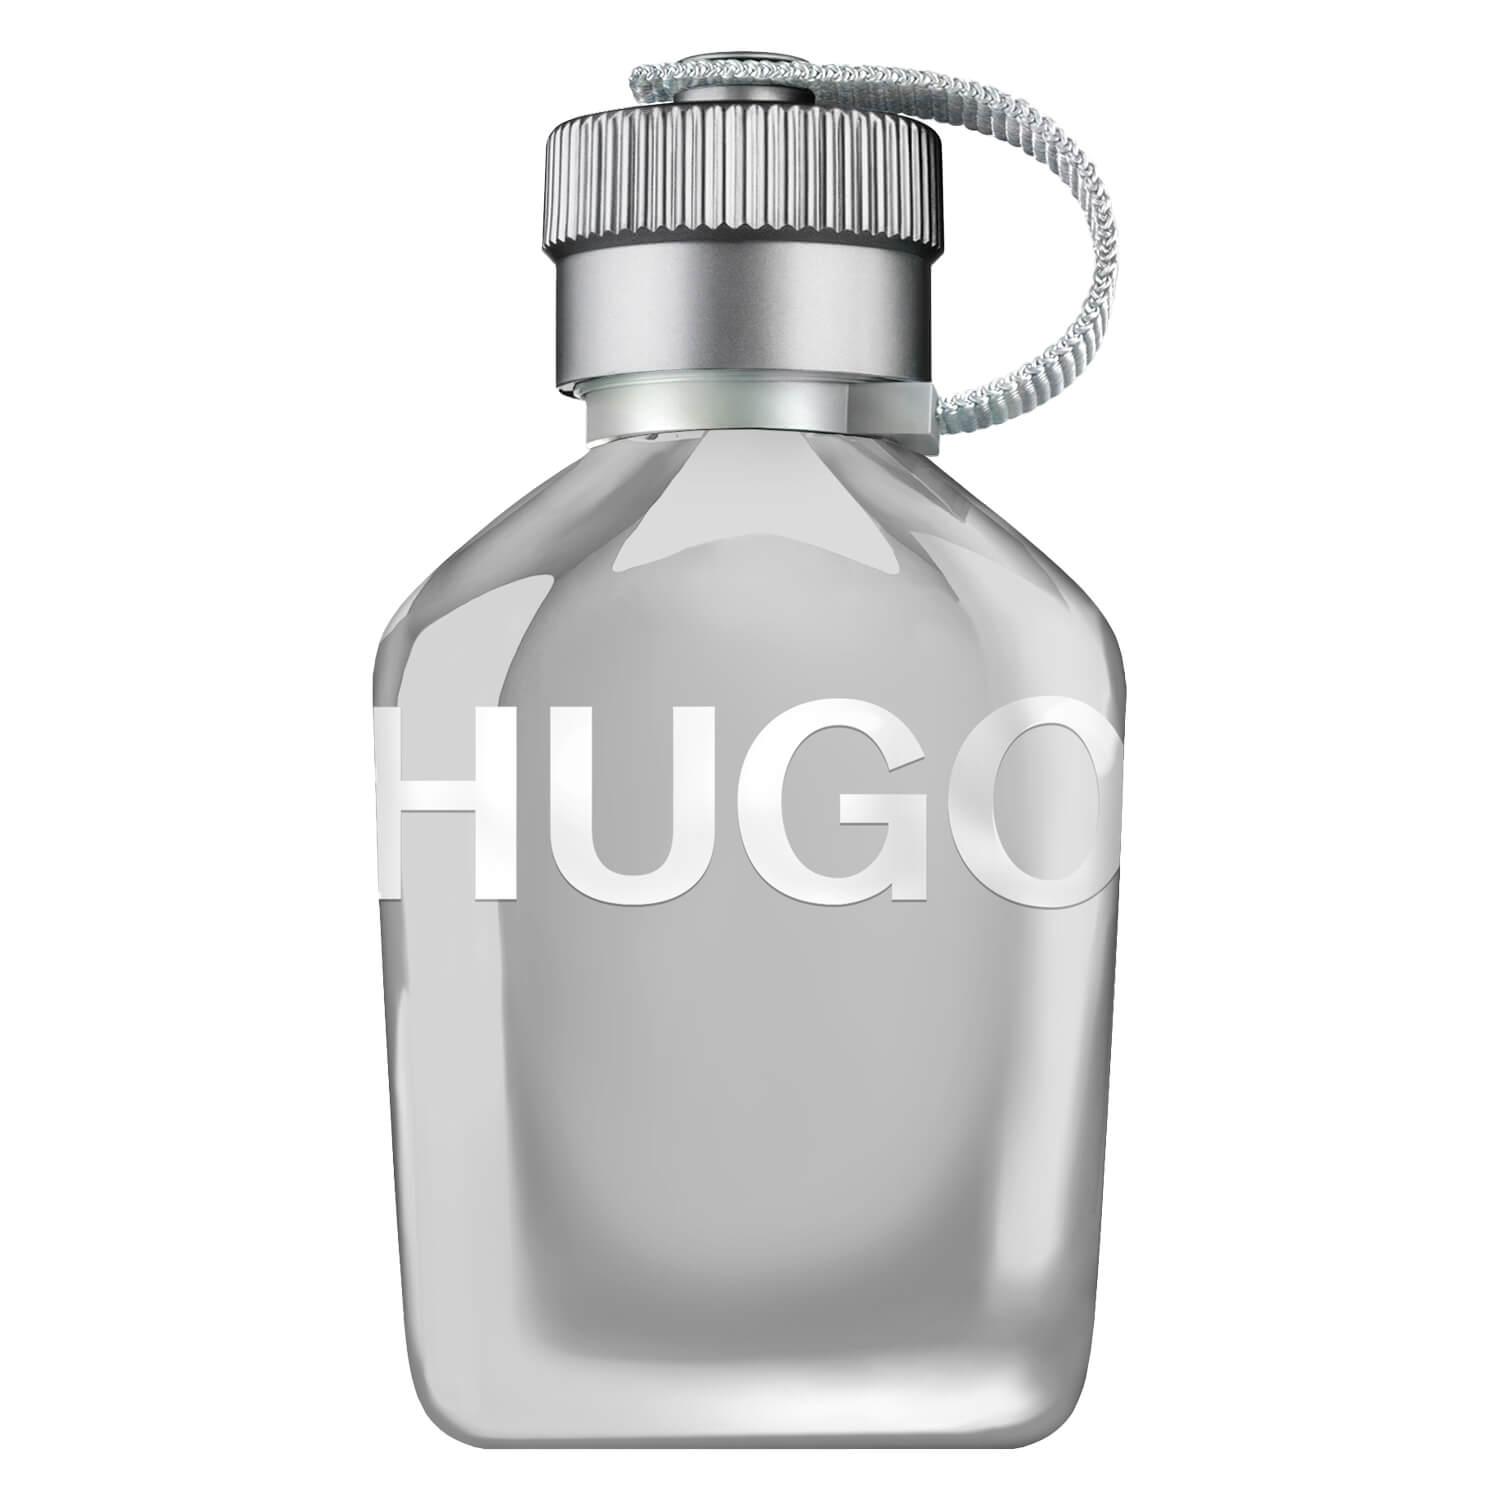 Hugo - Reflective Edition Eau de Toilette For Him